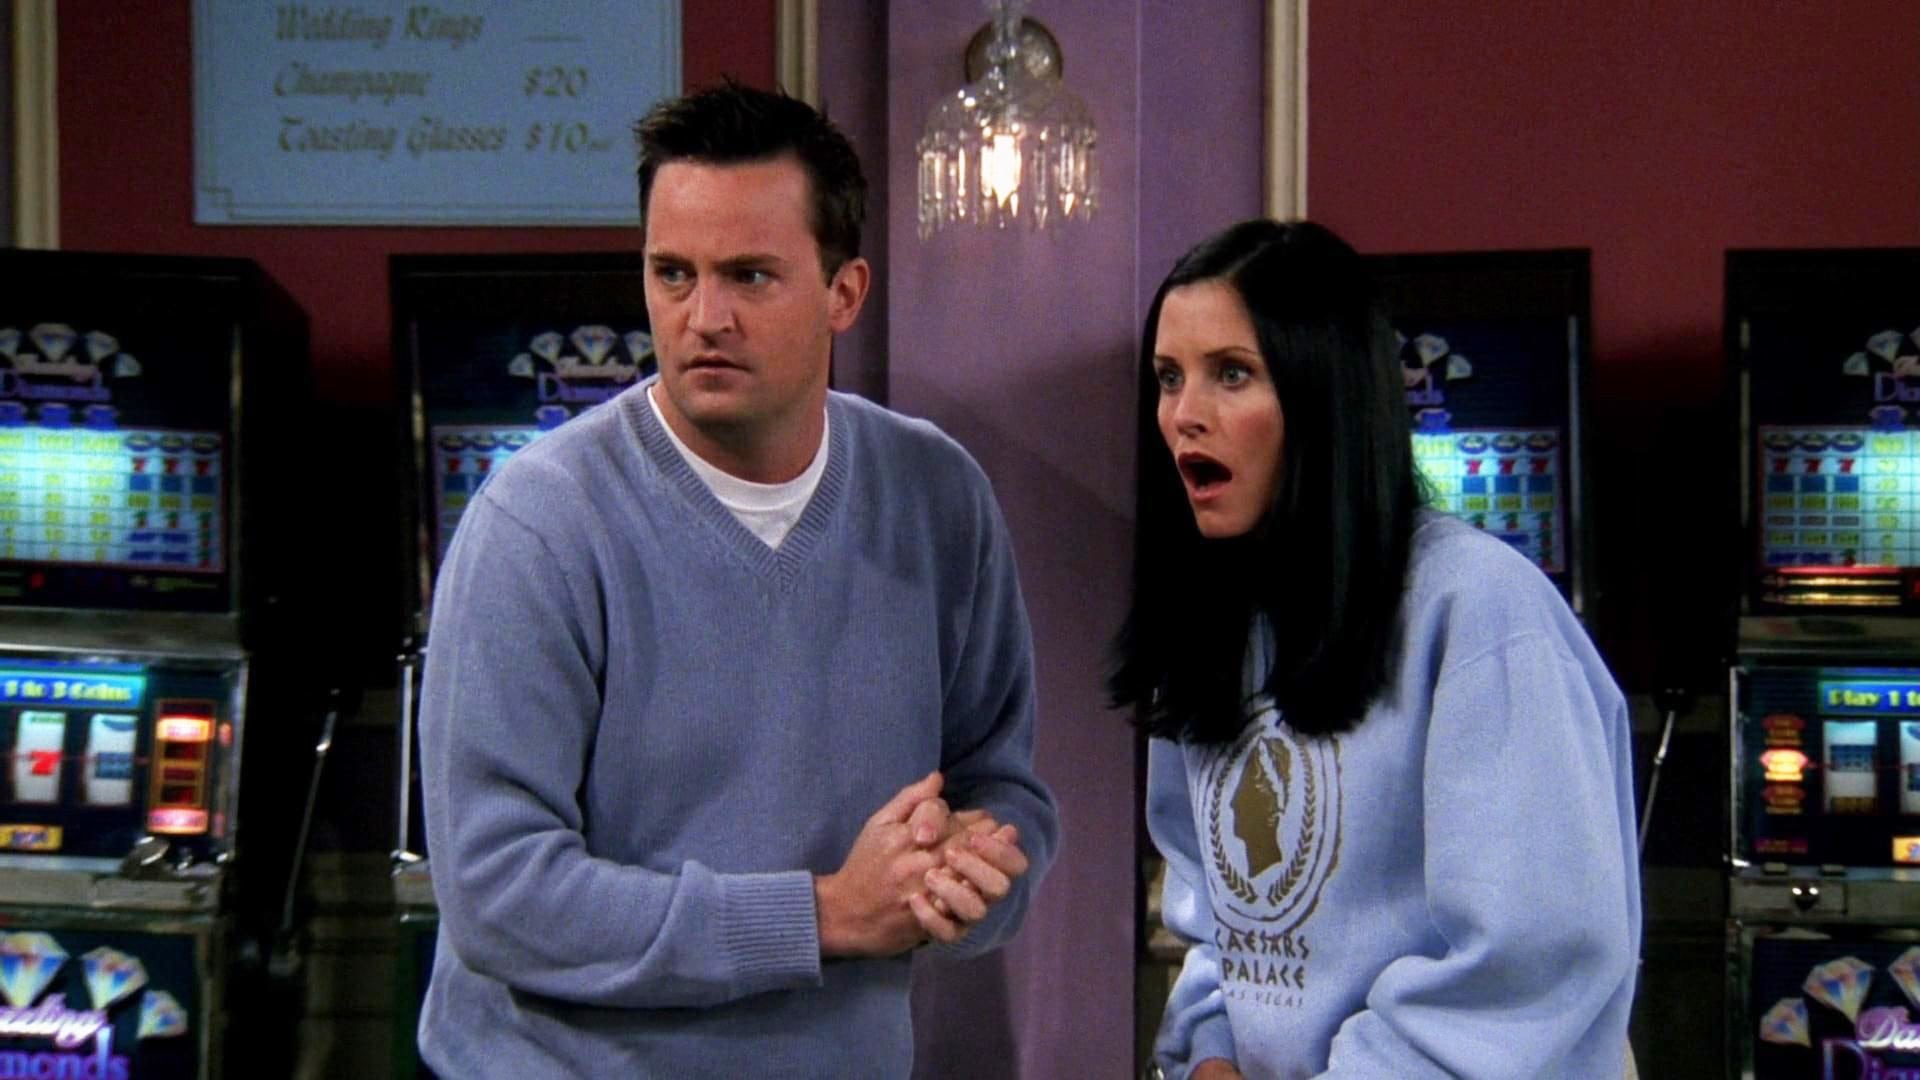 Friends temporada 6 - Ver todos los episodios online